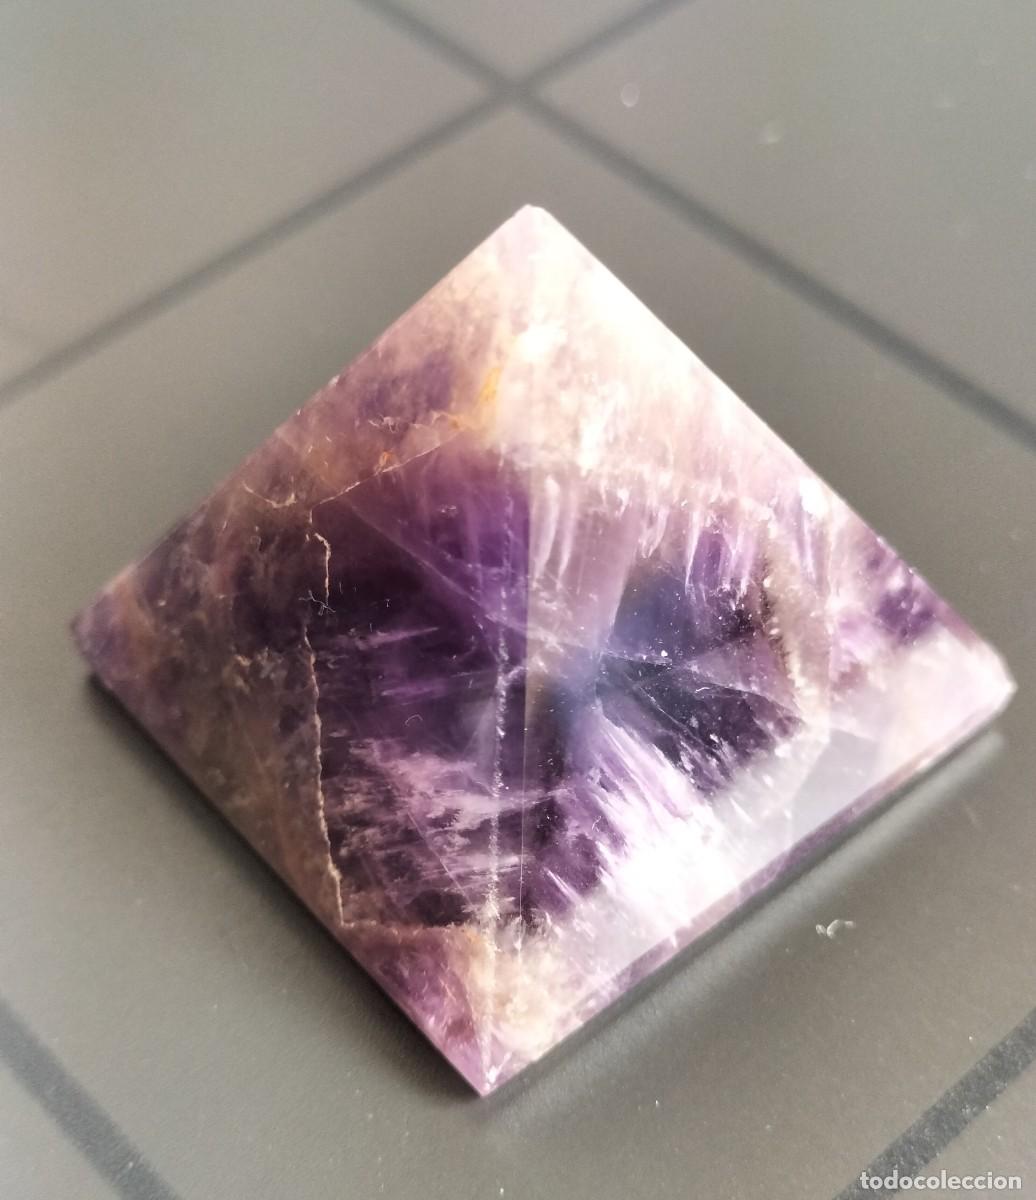 pirámide energética de cristal natural de 28 mm - Acquista